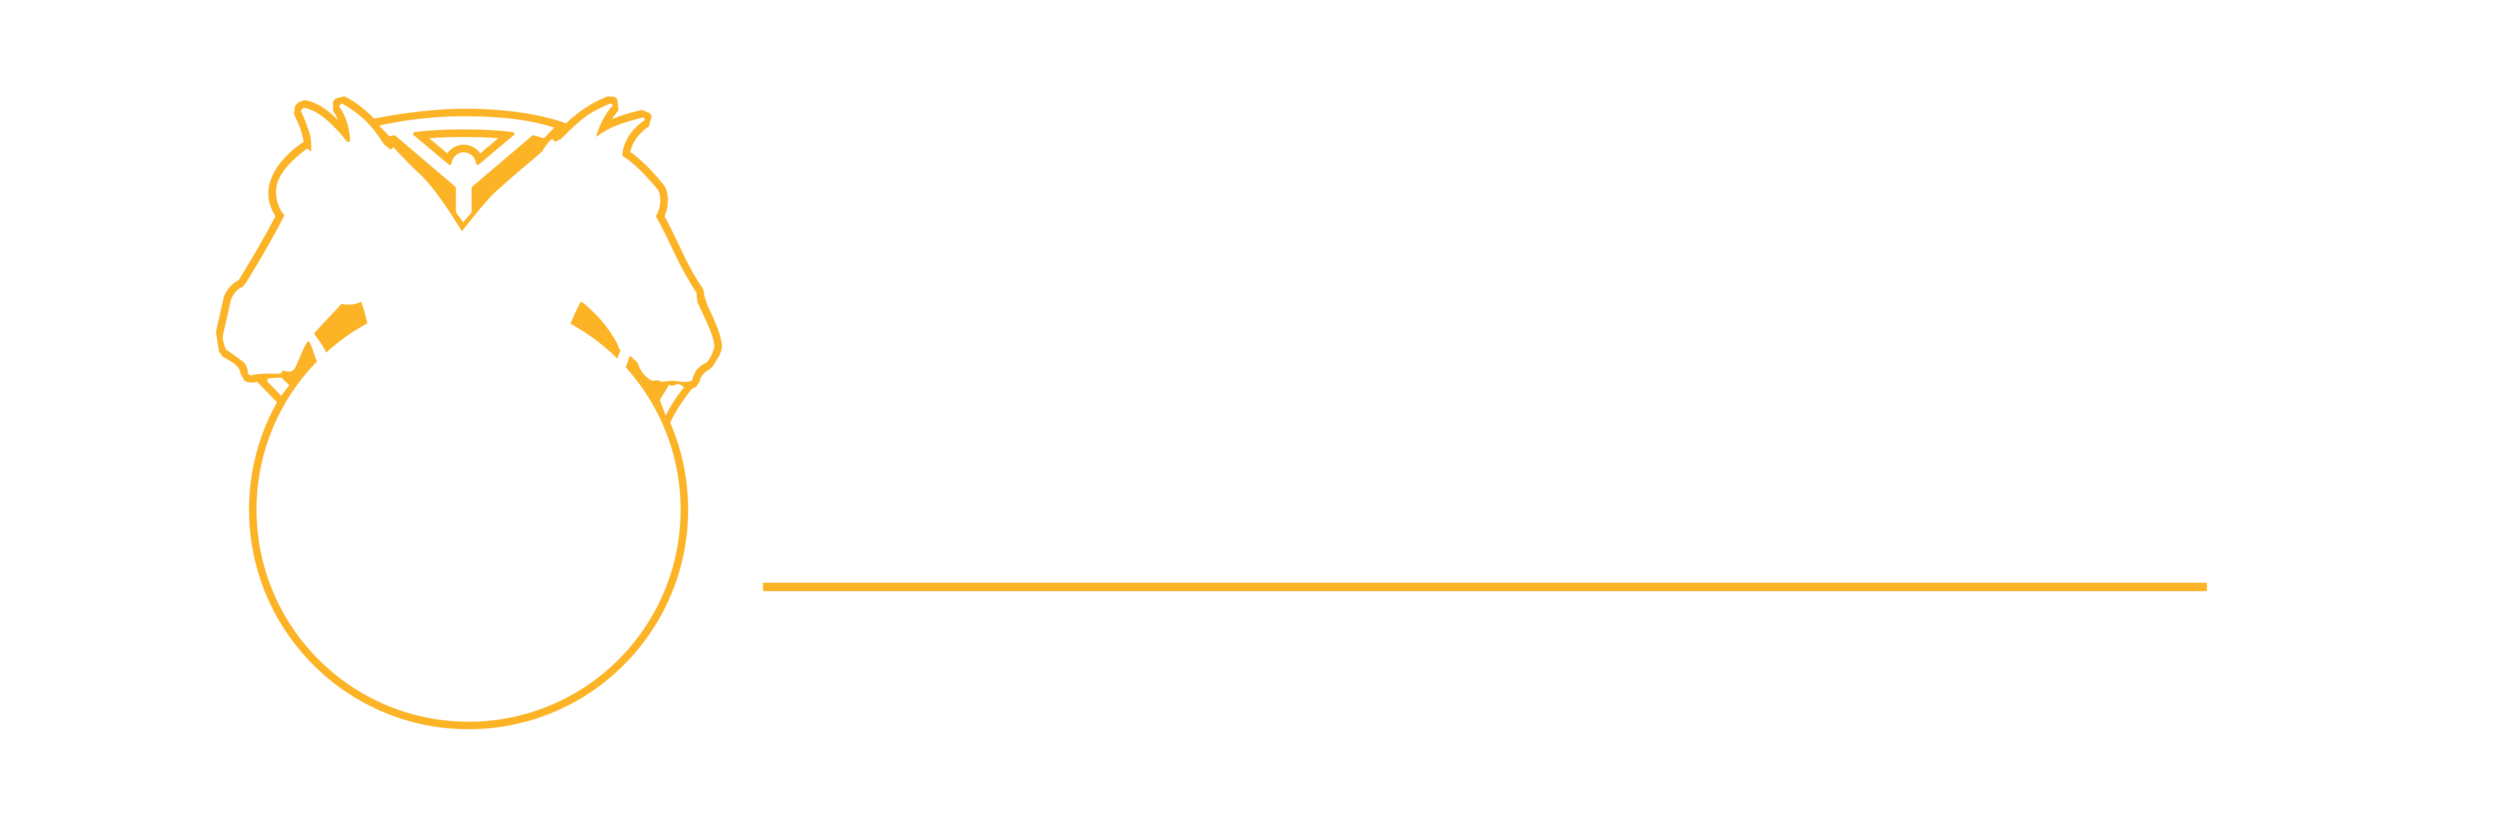 Teamsters Legal Defense Fund